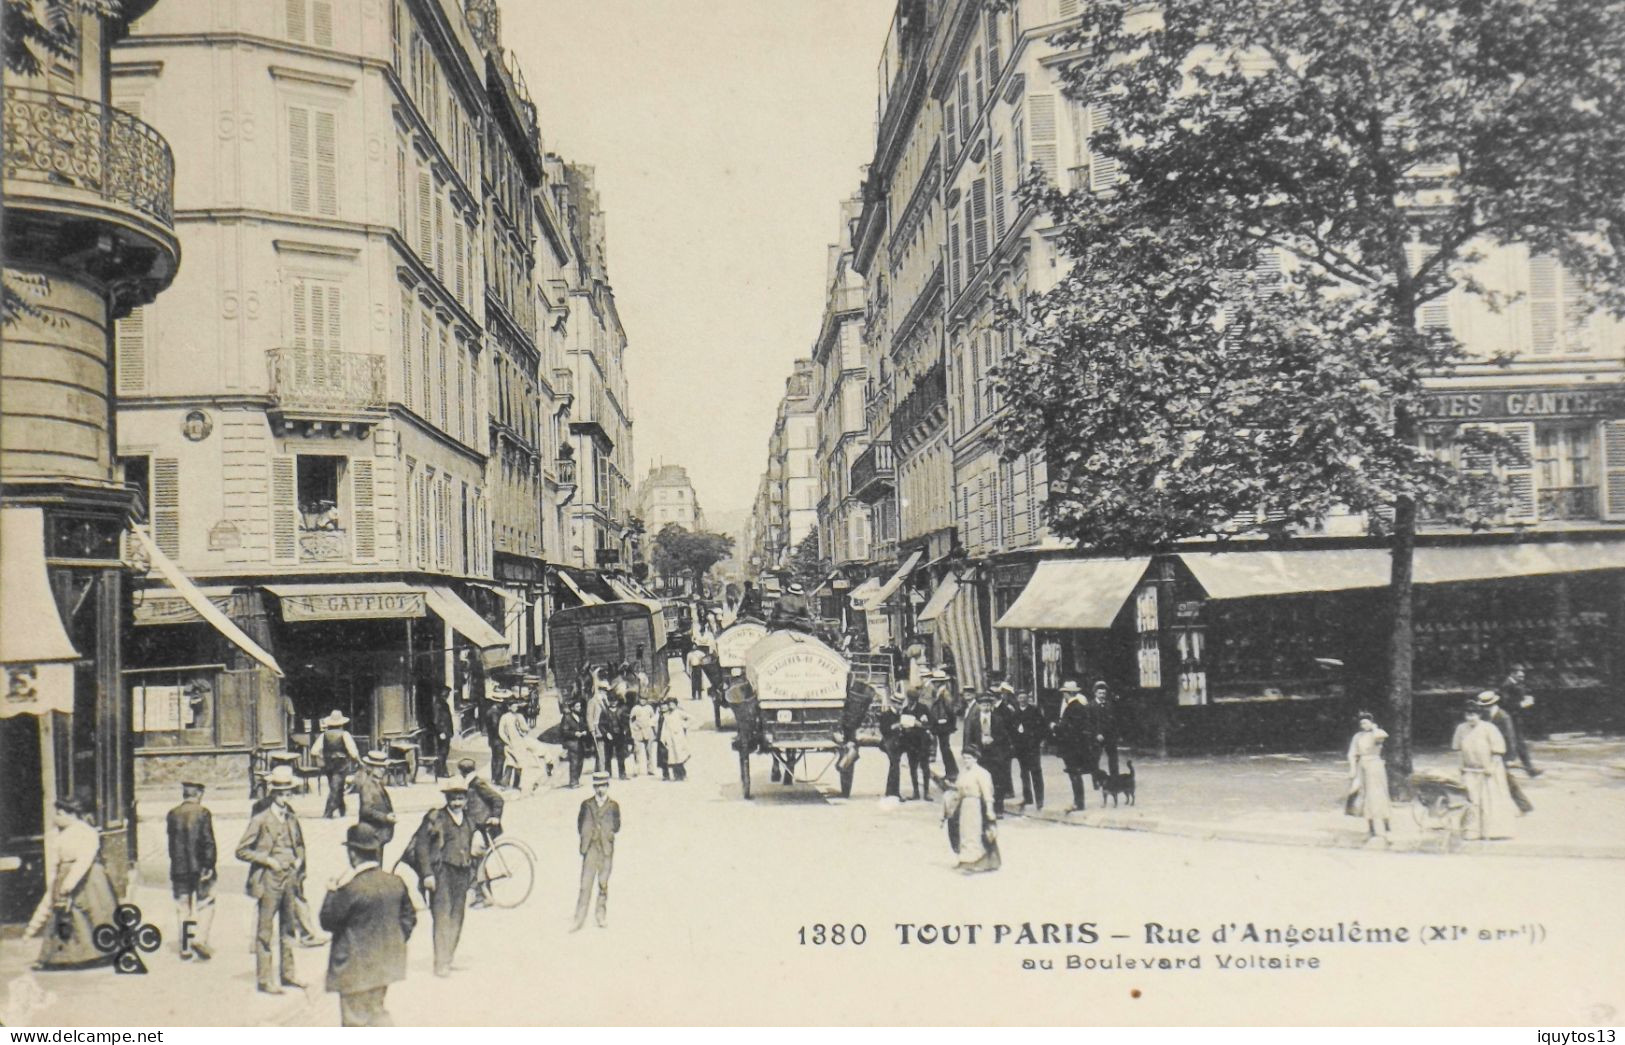 CPA. [75] > TOUT PARIS > N° 1380 - RUE D'ANGOULEME AU Bd. VOLTAIRE - (XIe Arrt.) - Coll. F. Fleury - TBE - District 11